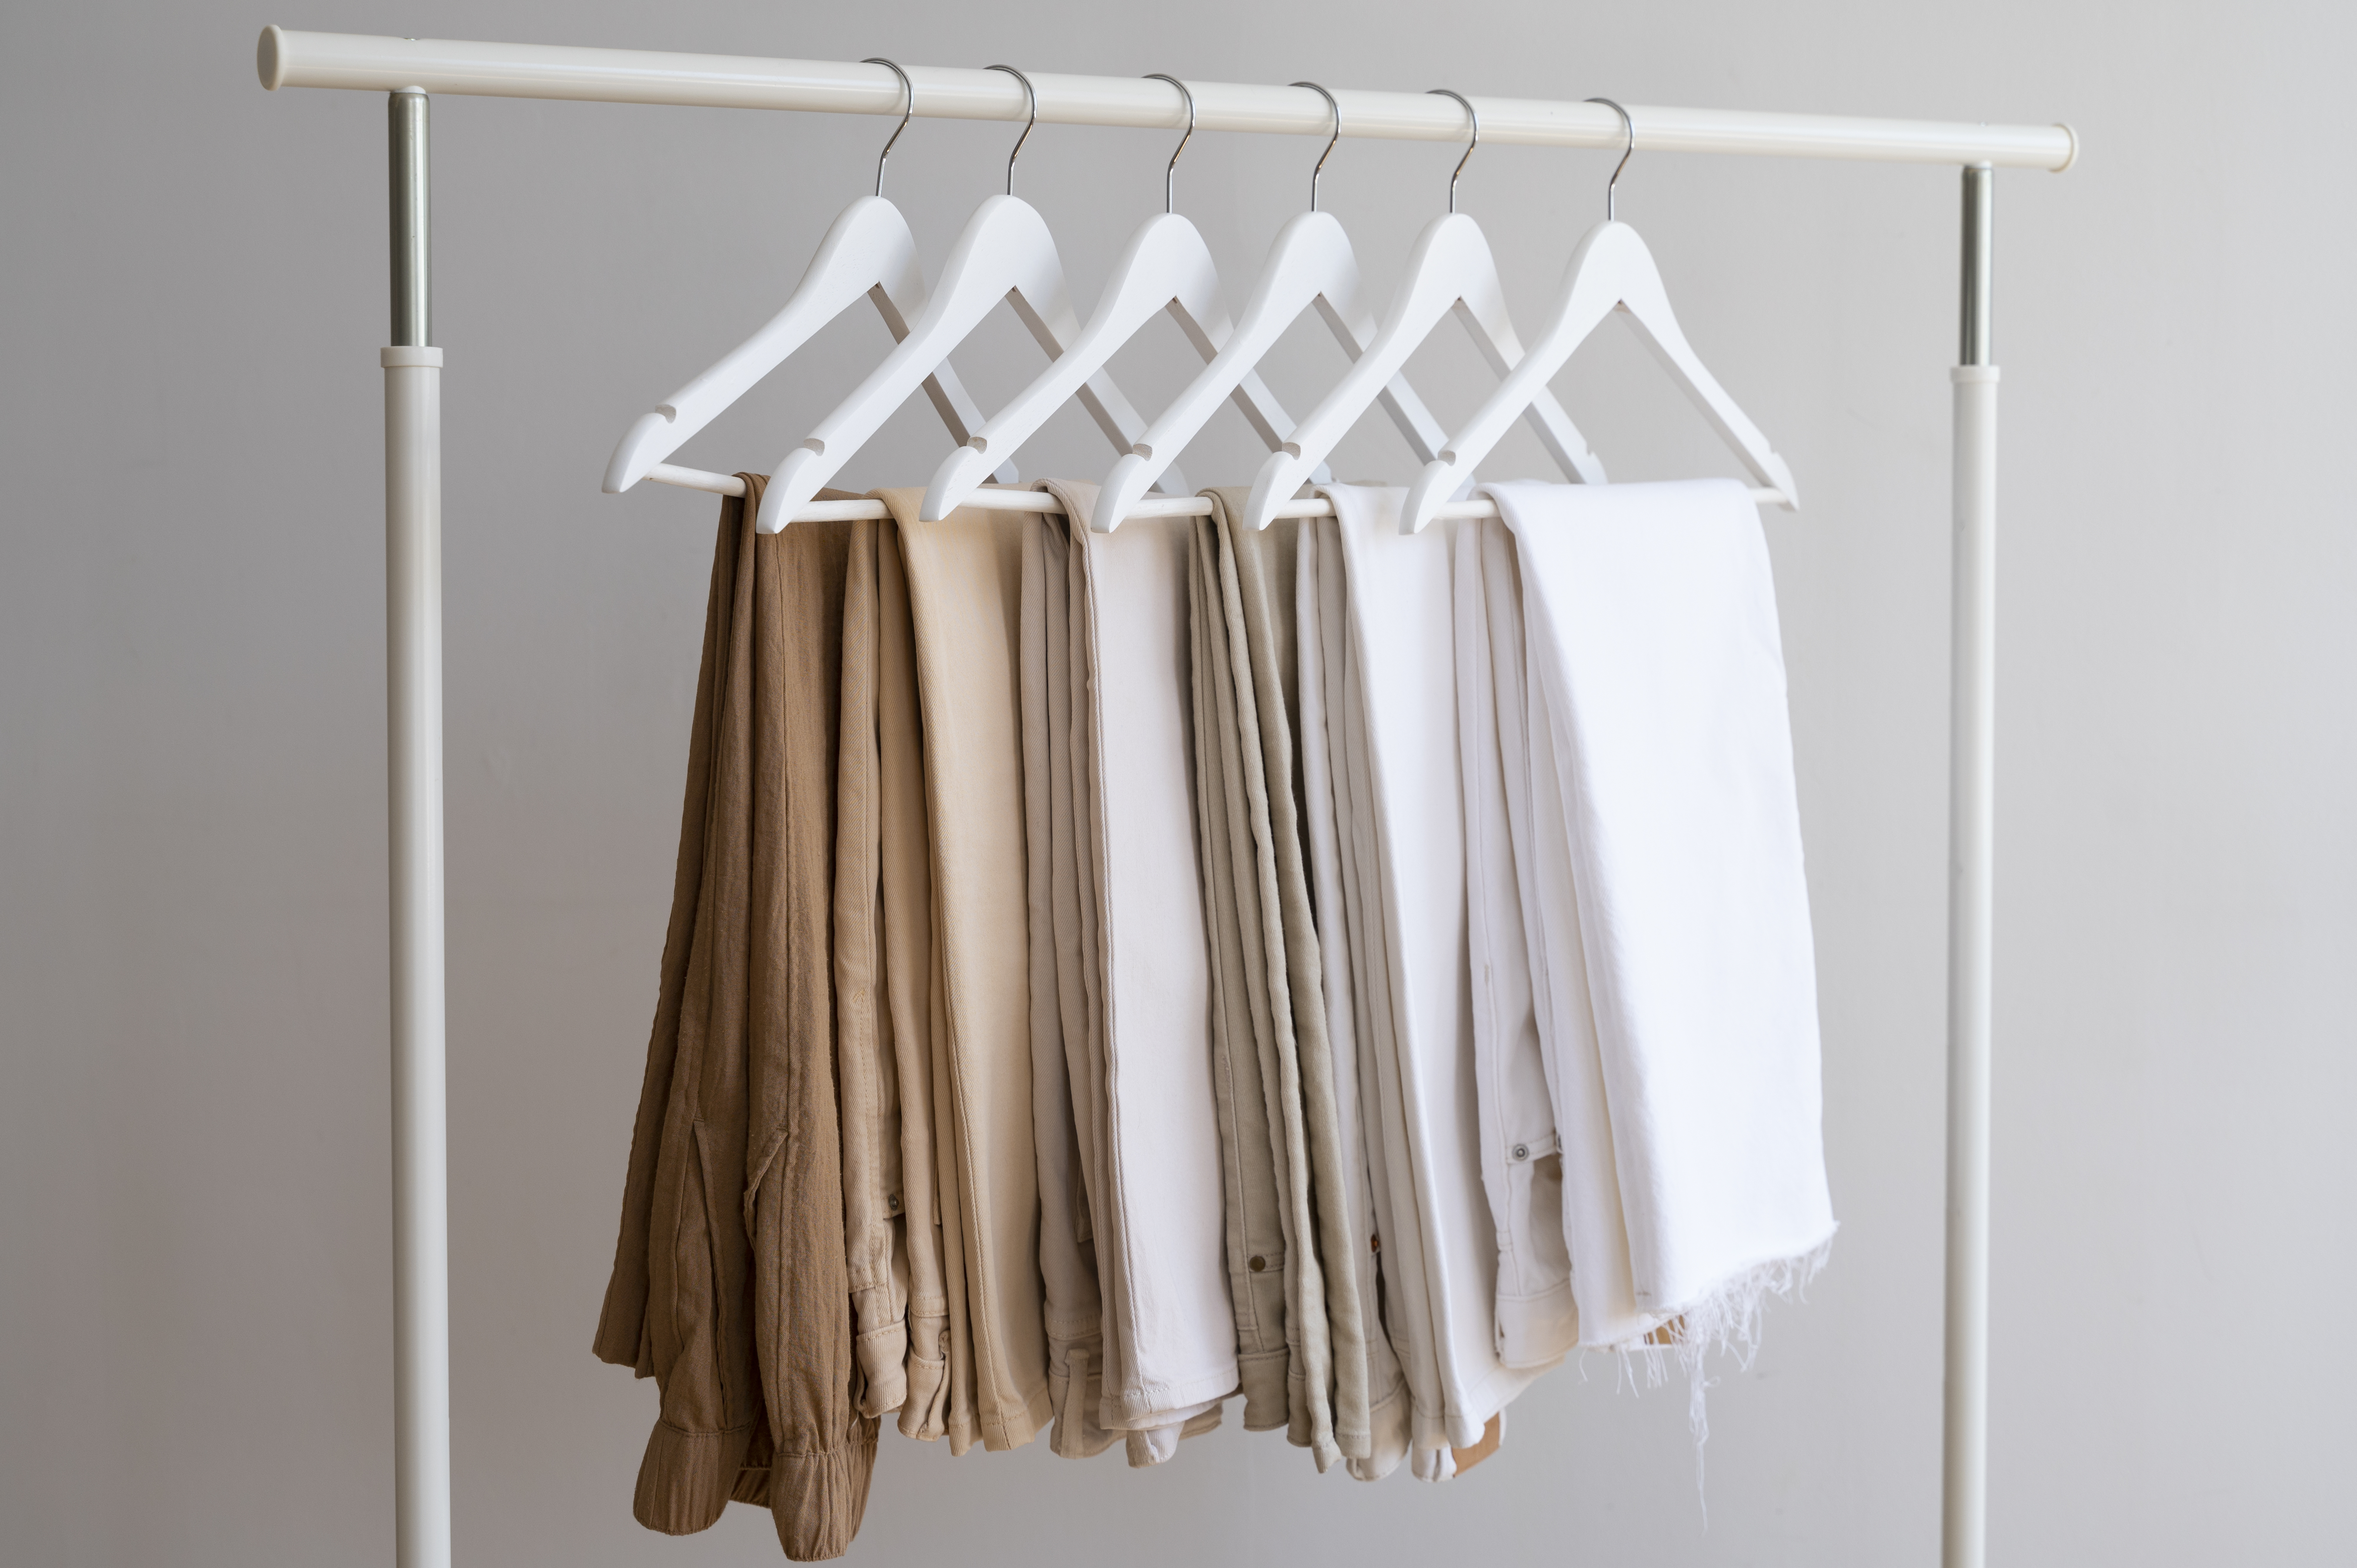 Jak wybrać idealny drążek ubraniowy do Twojej garderoby?